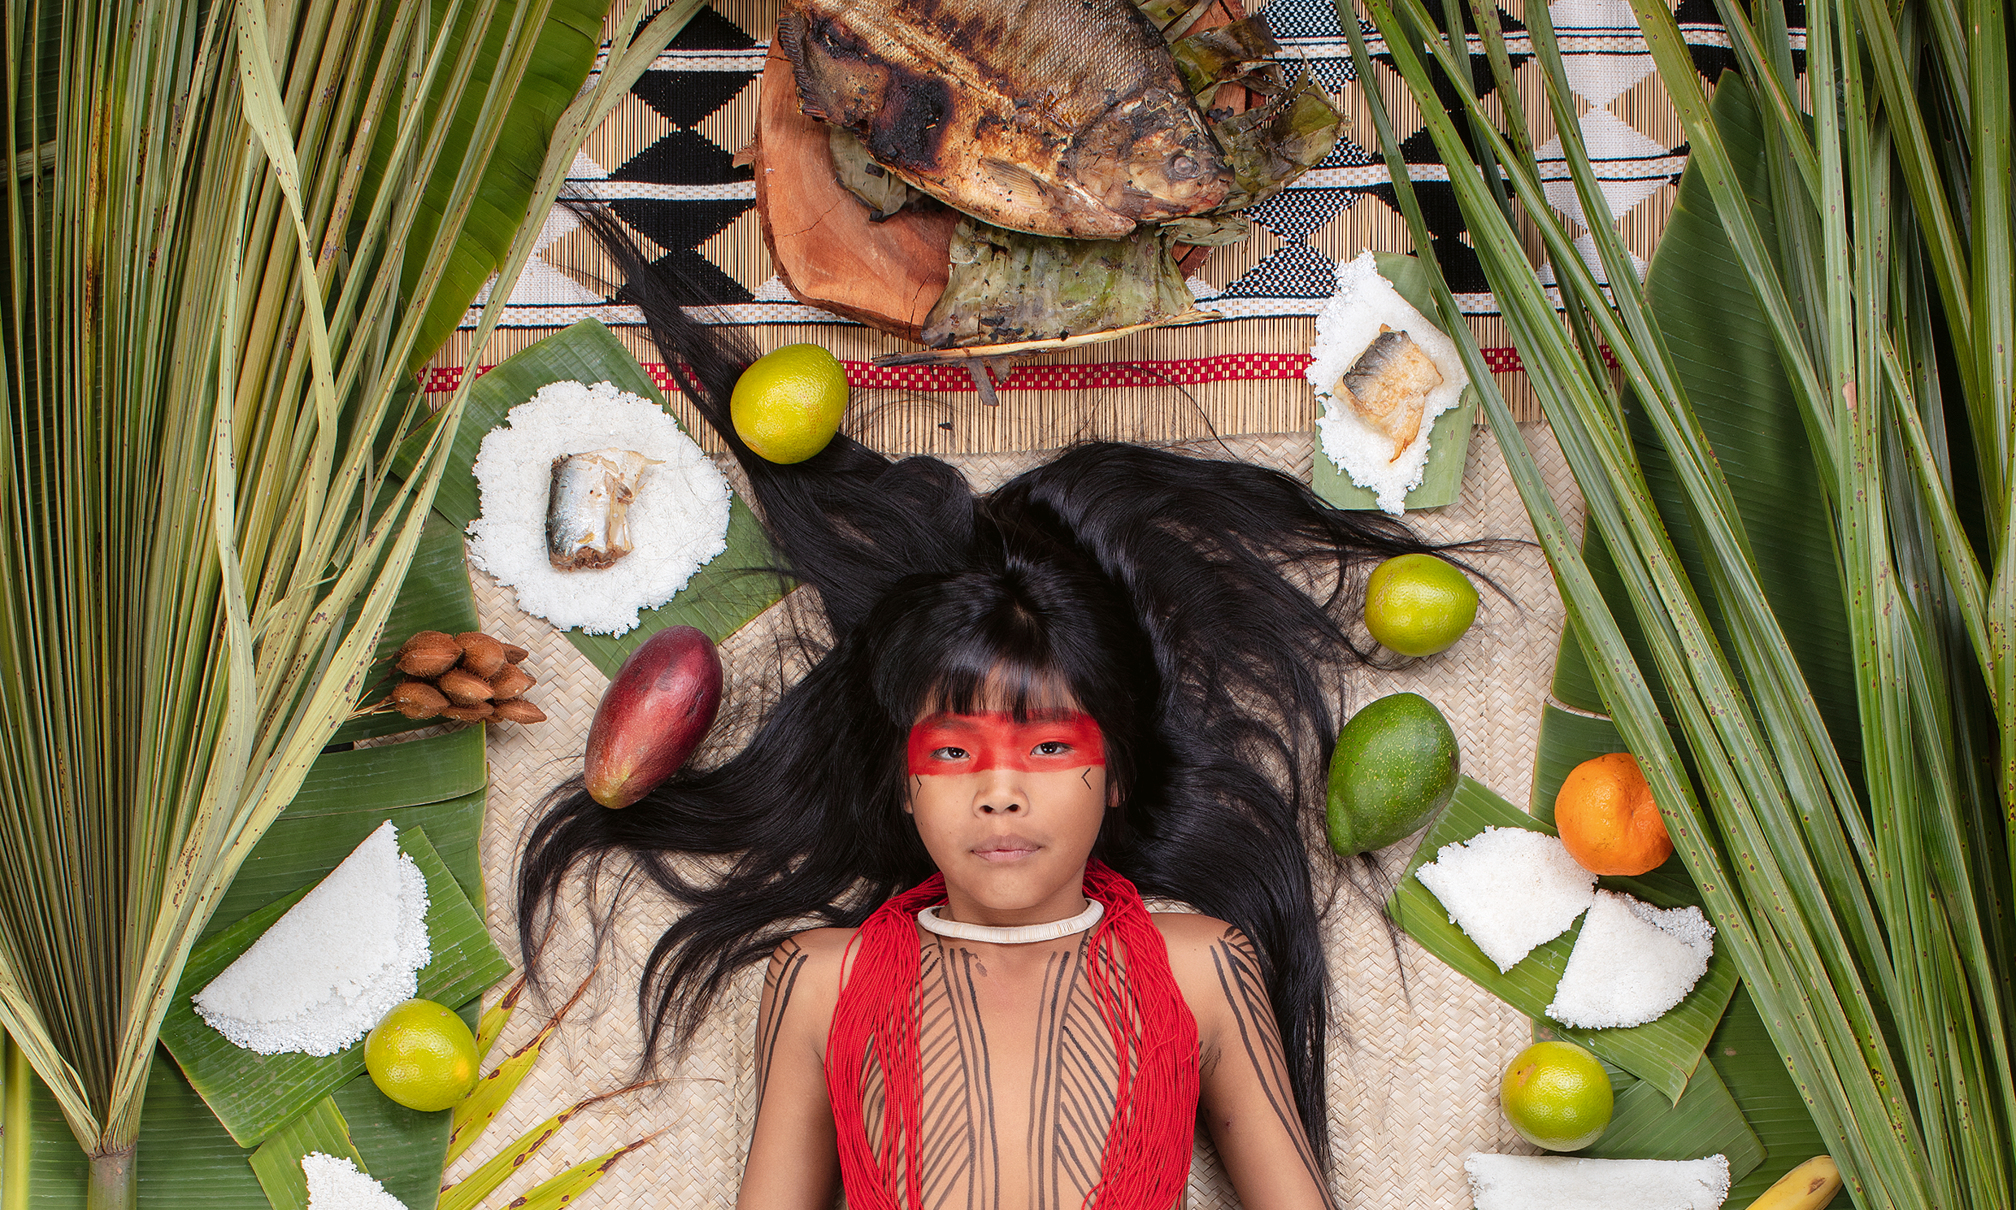 Ein indigenes Kind liegt auf einem Bambustuch, umringt von verschiedenen Speisen, die darstellen, was das Mädchen in einer Woche isst.